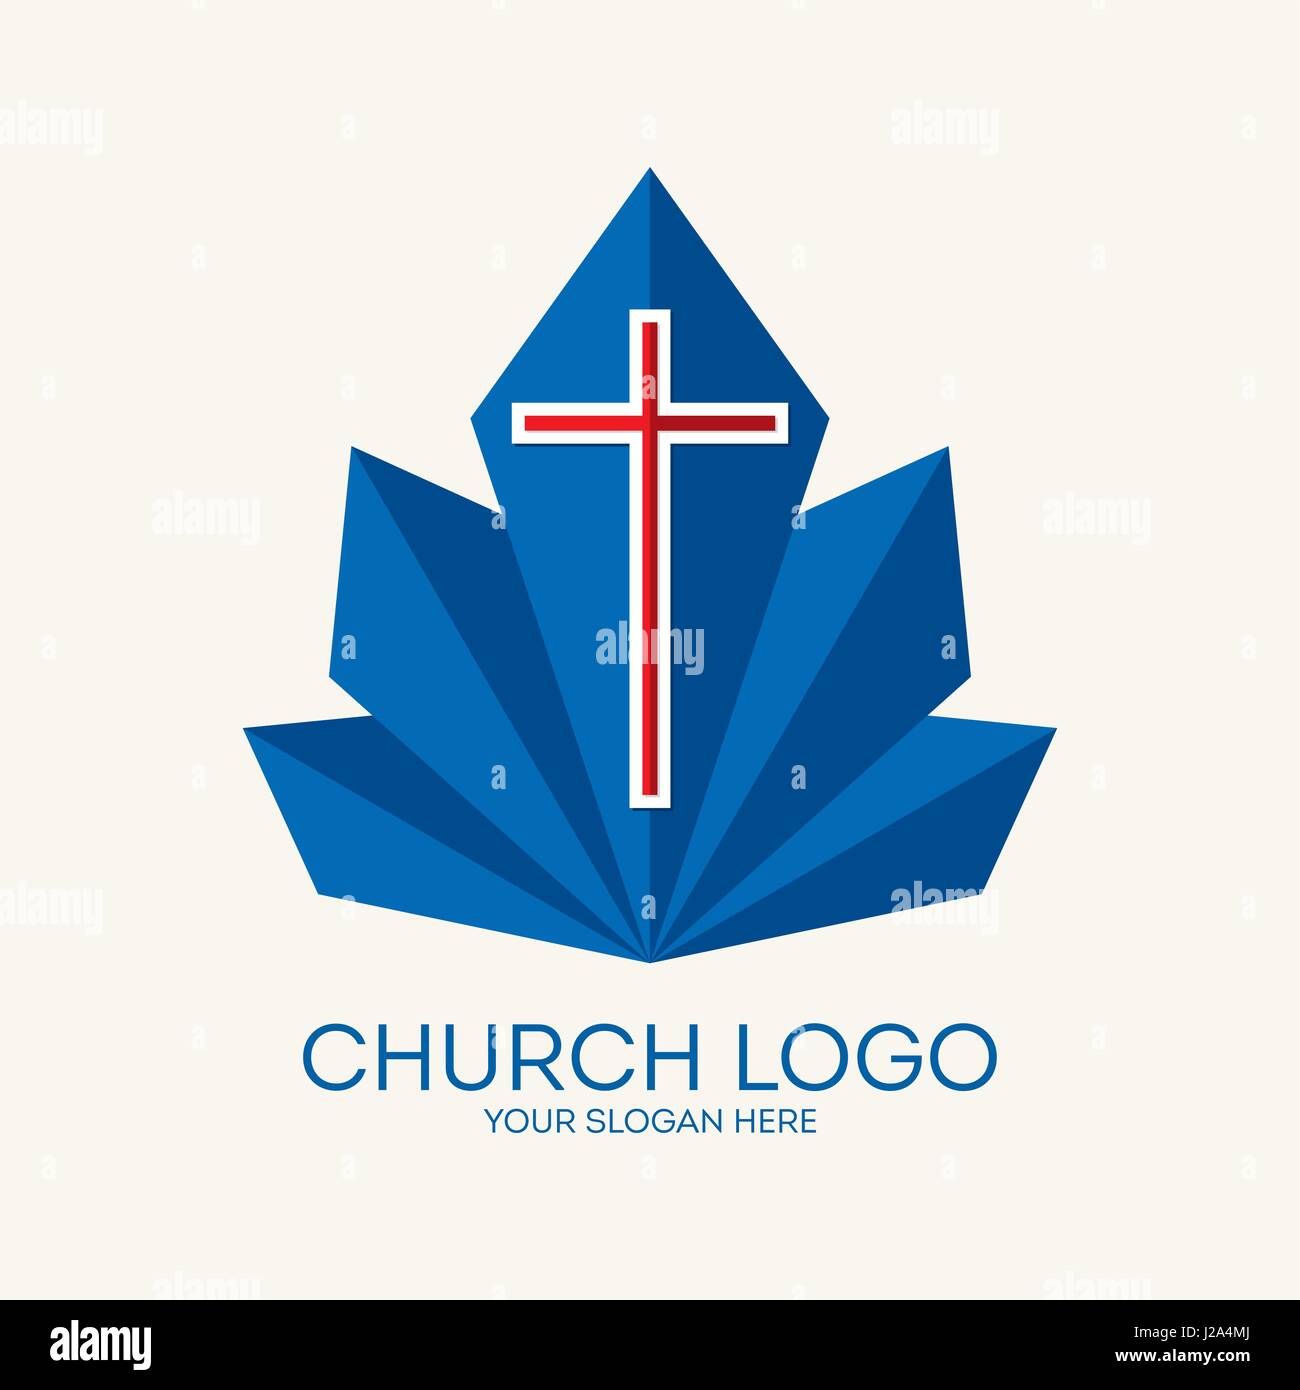 Logo für die Kirche, Mission, Service. Biblische und christliche Symbole. Stock Vektor